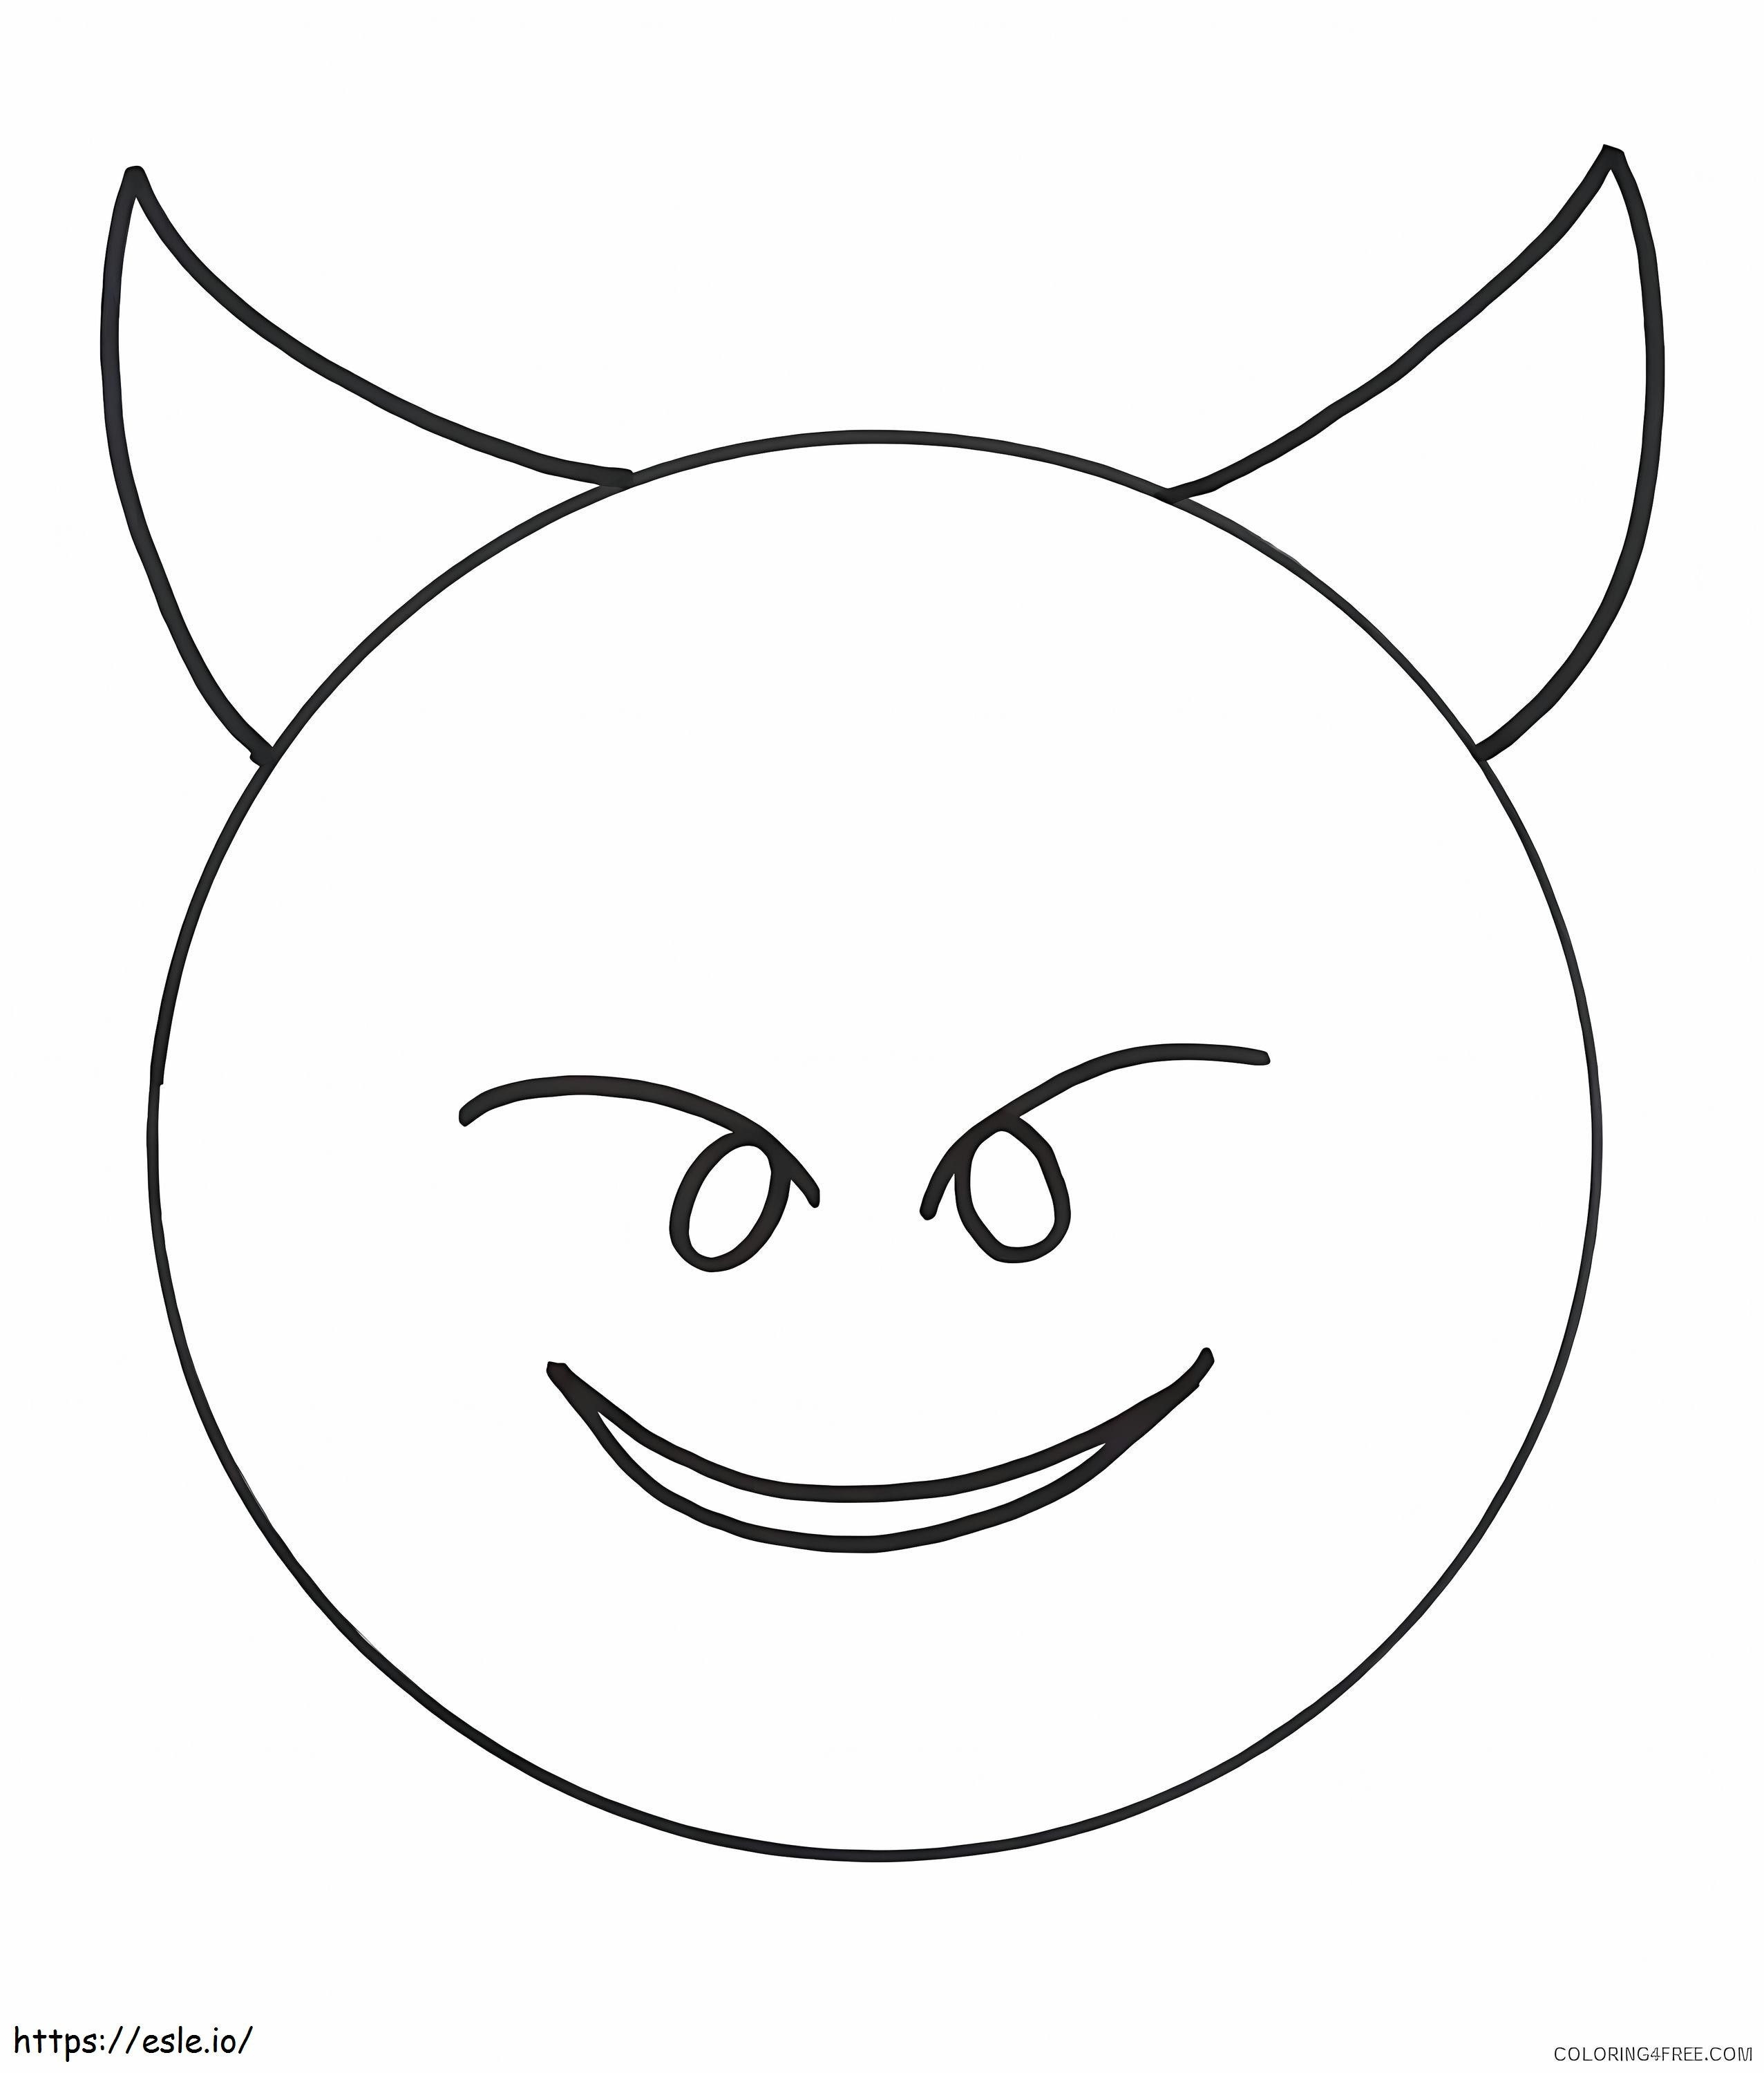 Demonio Emoji coloring page